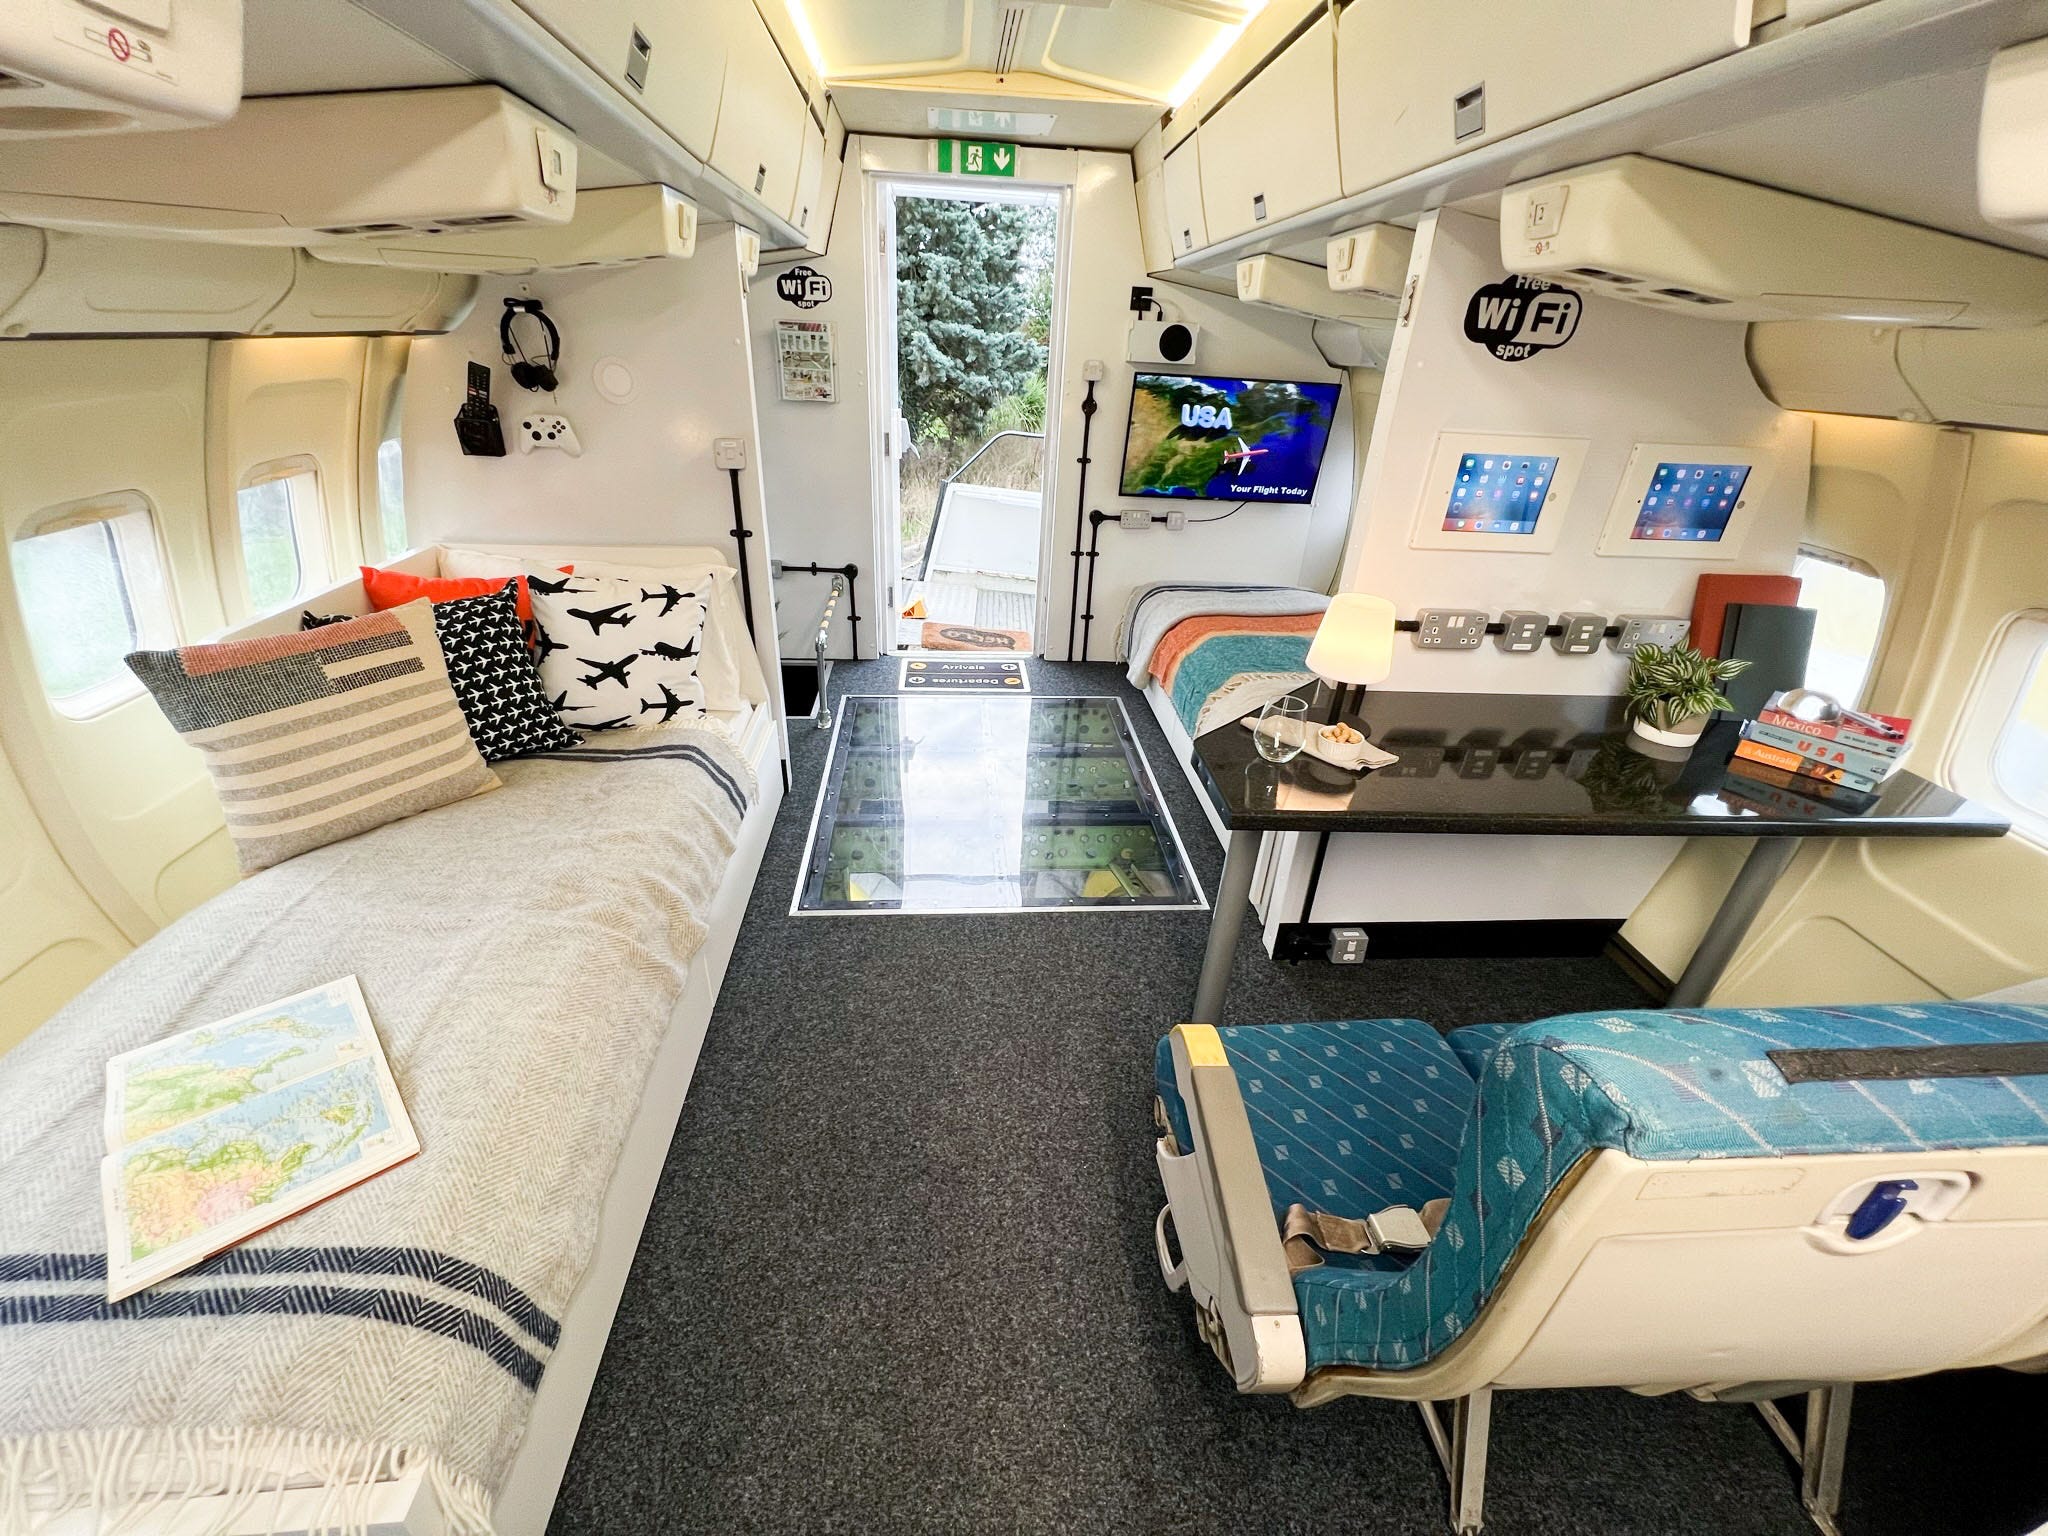 Sitzbereich und Bett im Flugzeugumbau